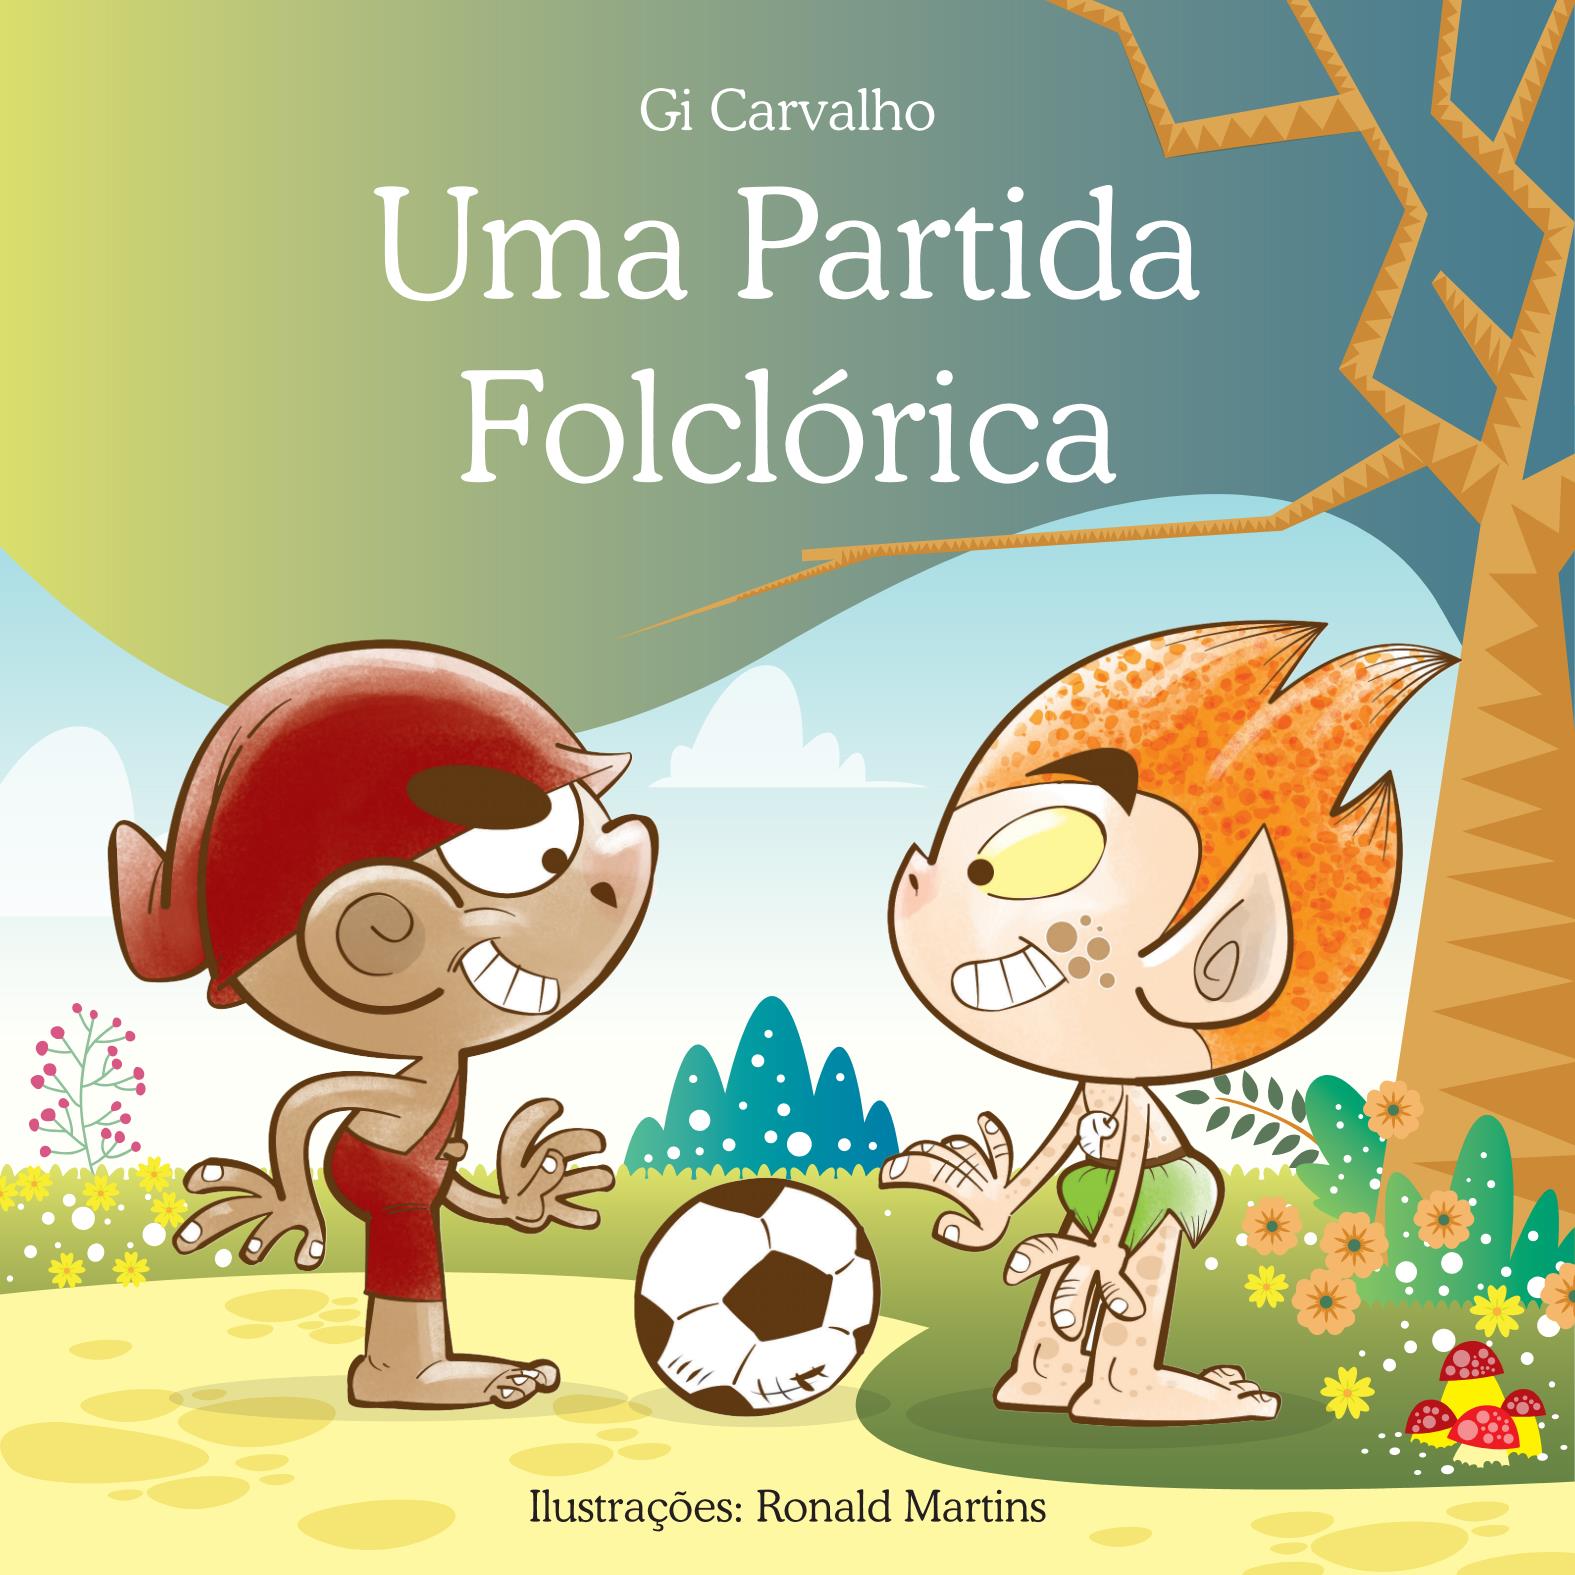 Brincadeiras Infantis, PDF, Futebol